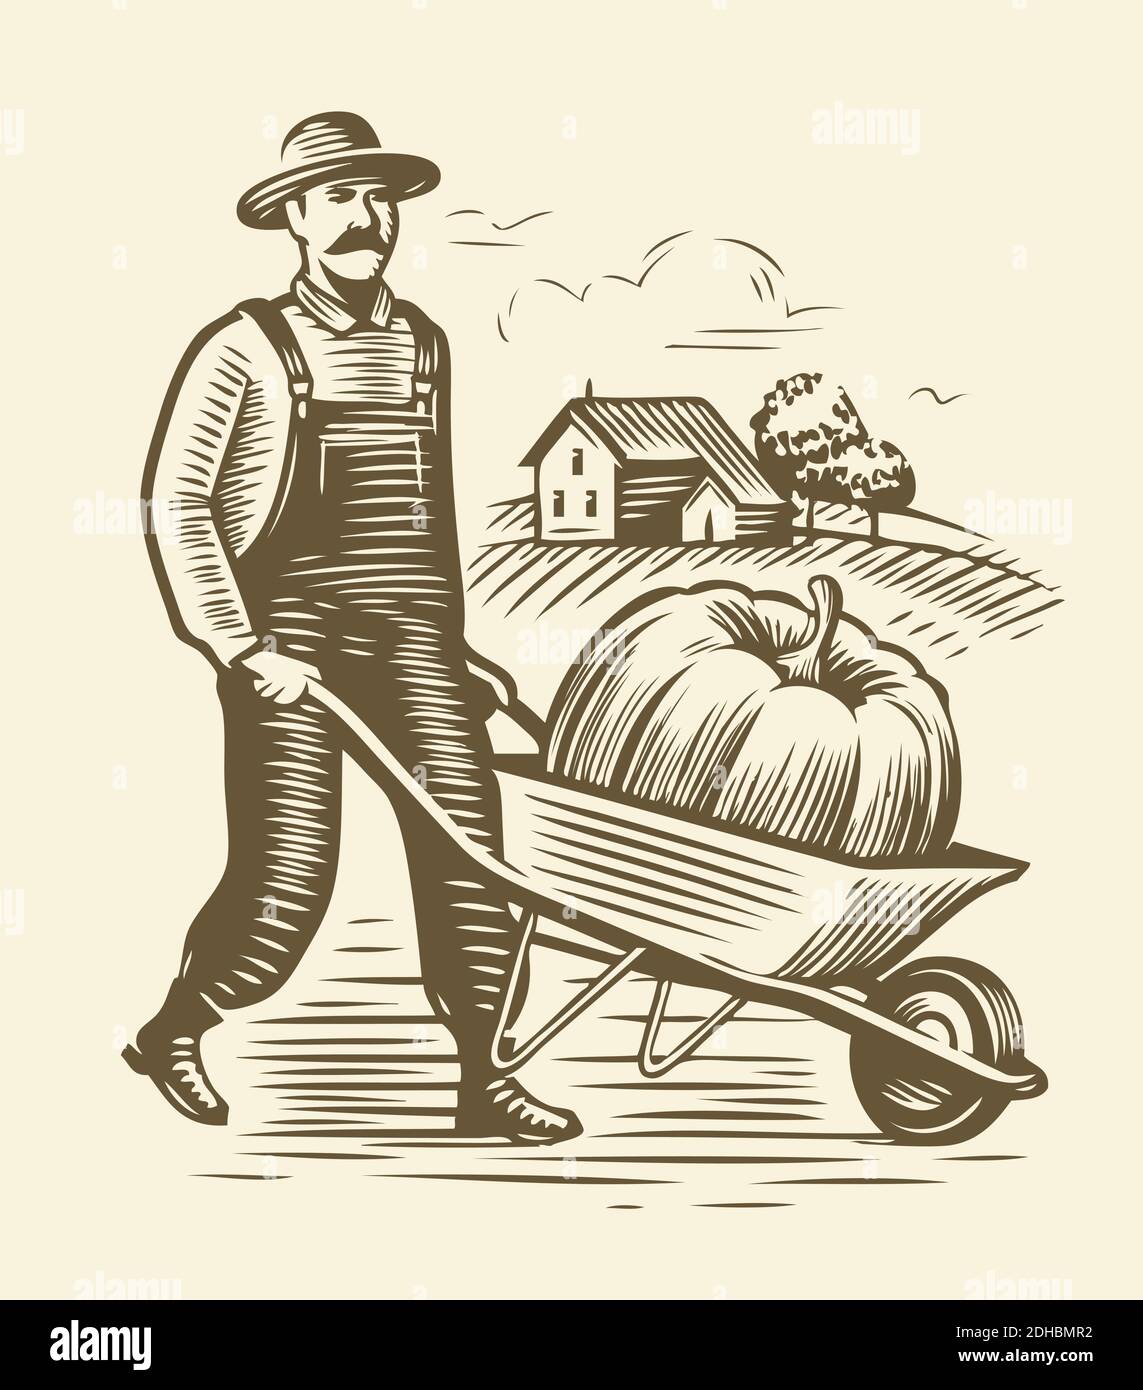 Farmer with wheelbarrow sketch. Agriculture, farm vintage vector  illustration Stock Vector Image & Art - Alamy